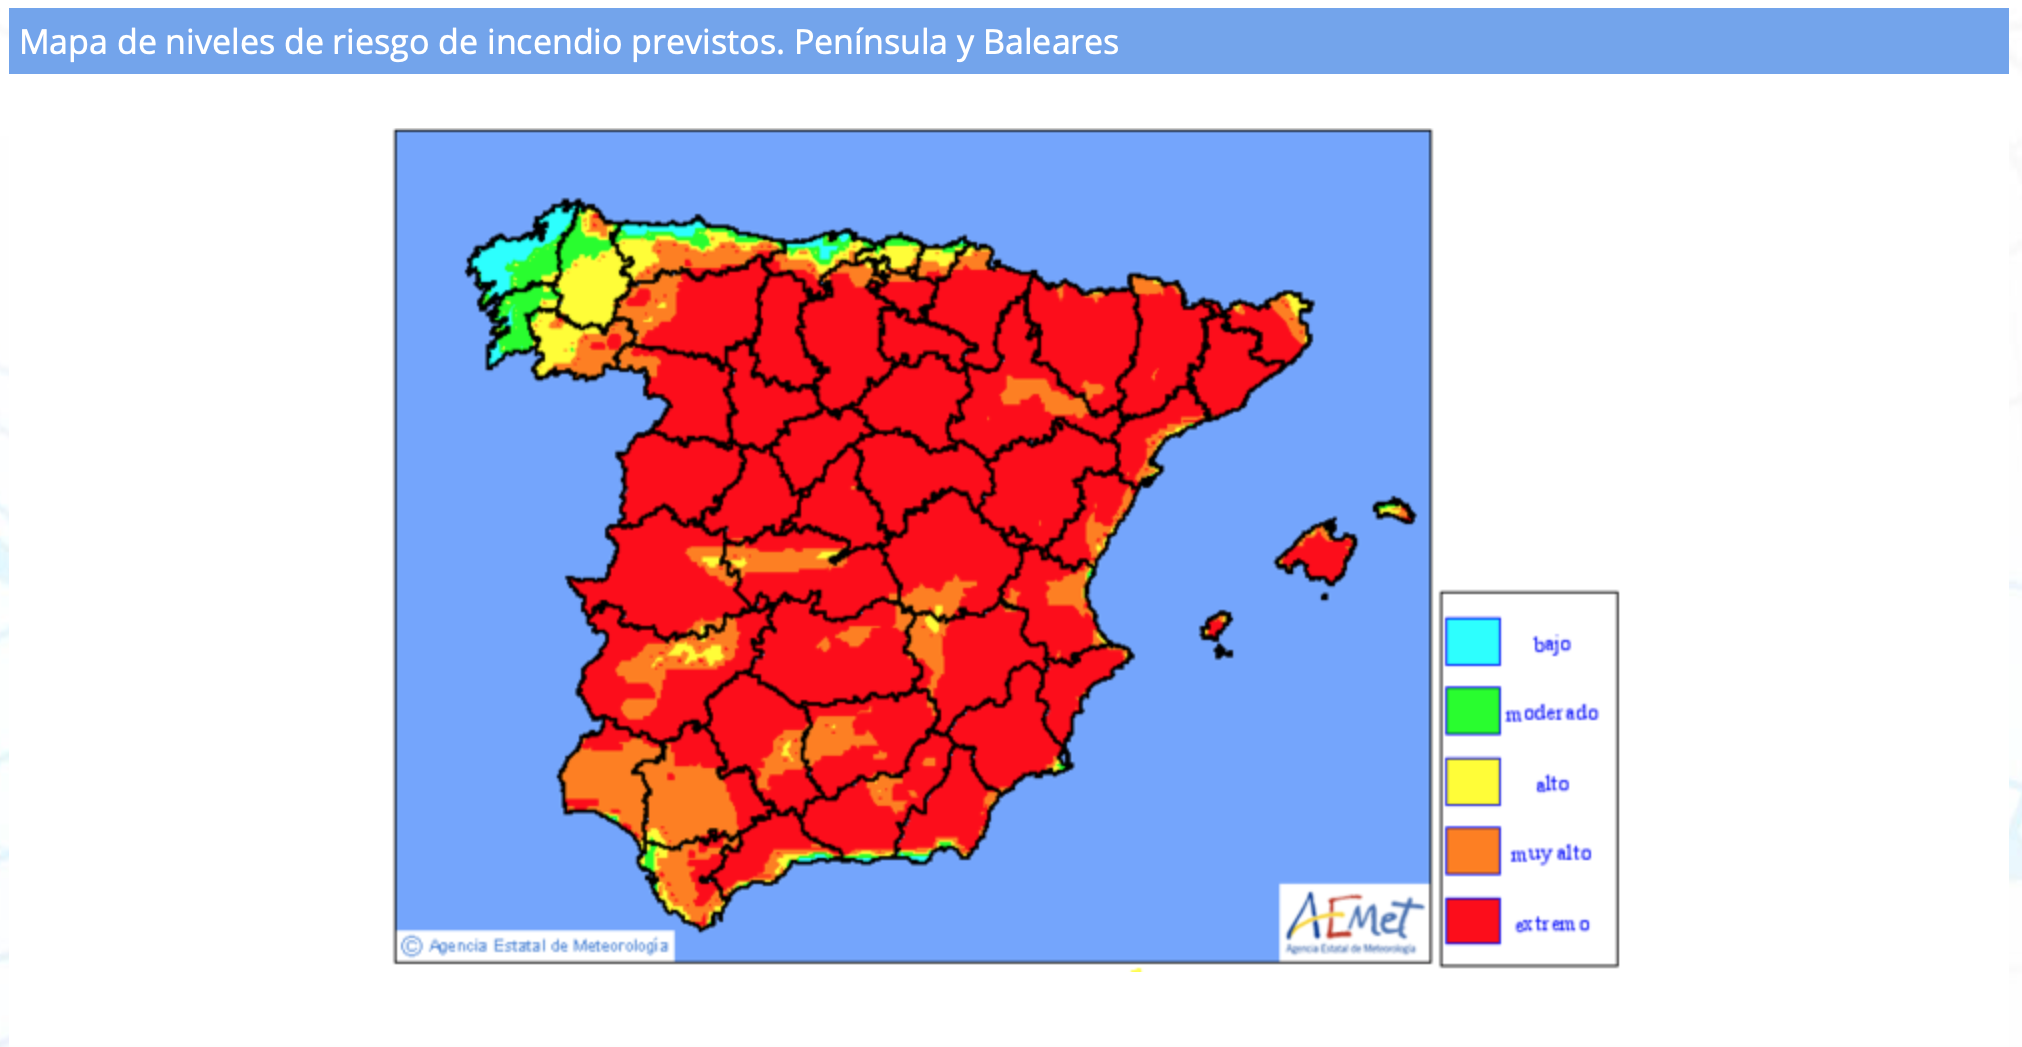 Mapa de España / AEMET